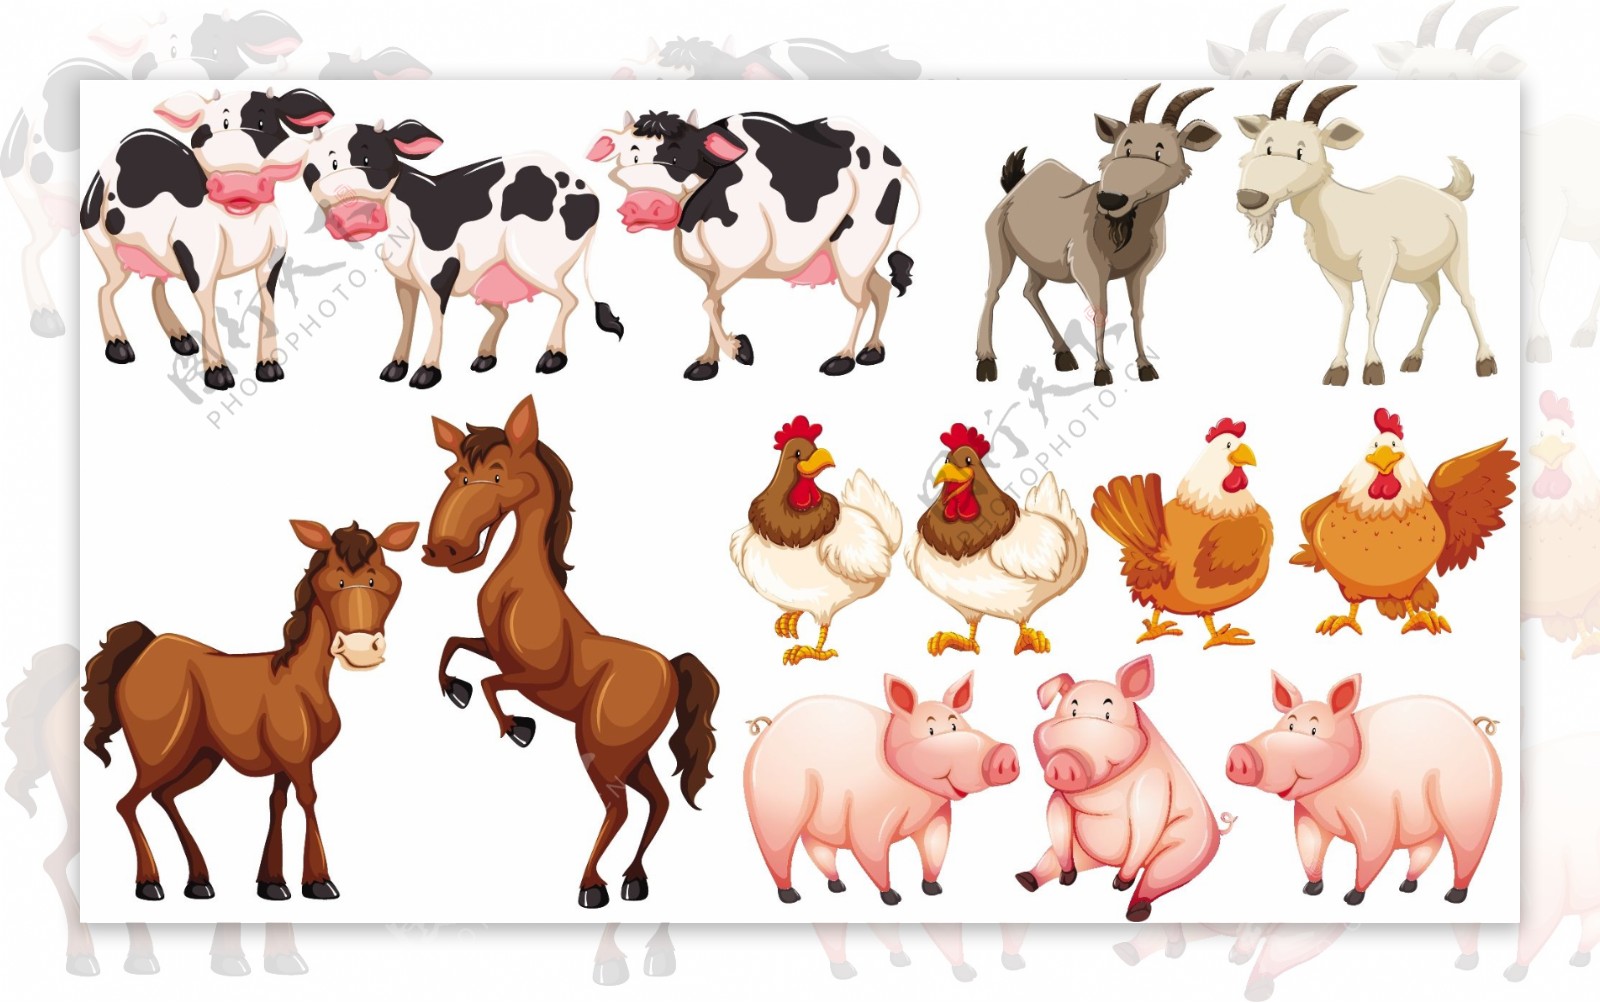 农场插图中的不同动物